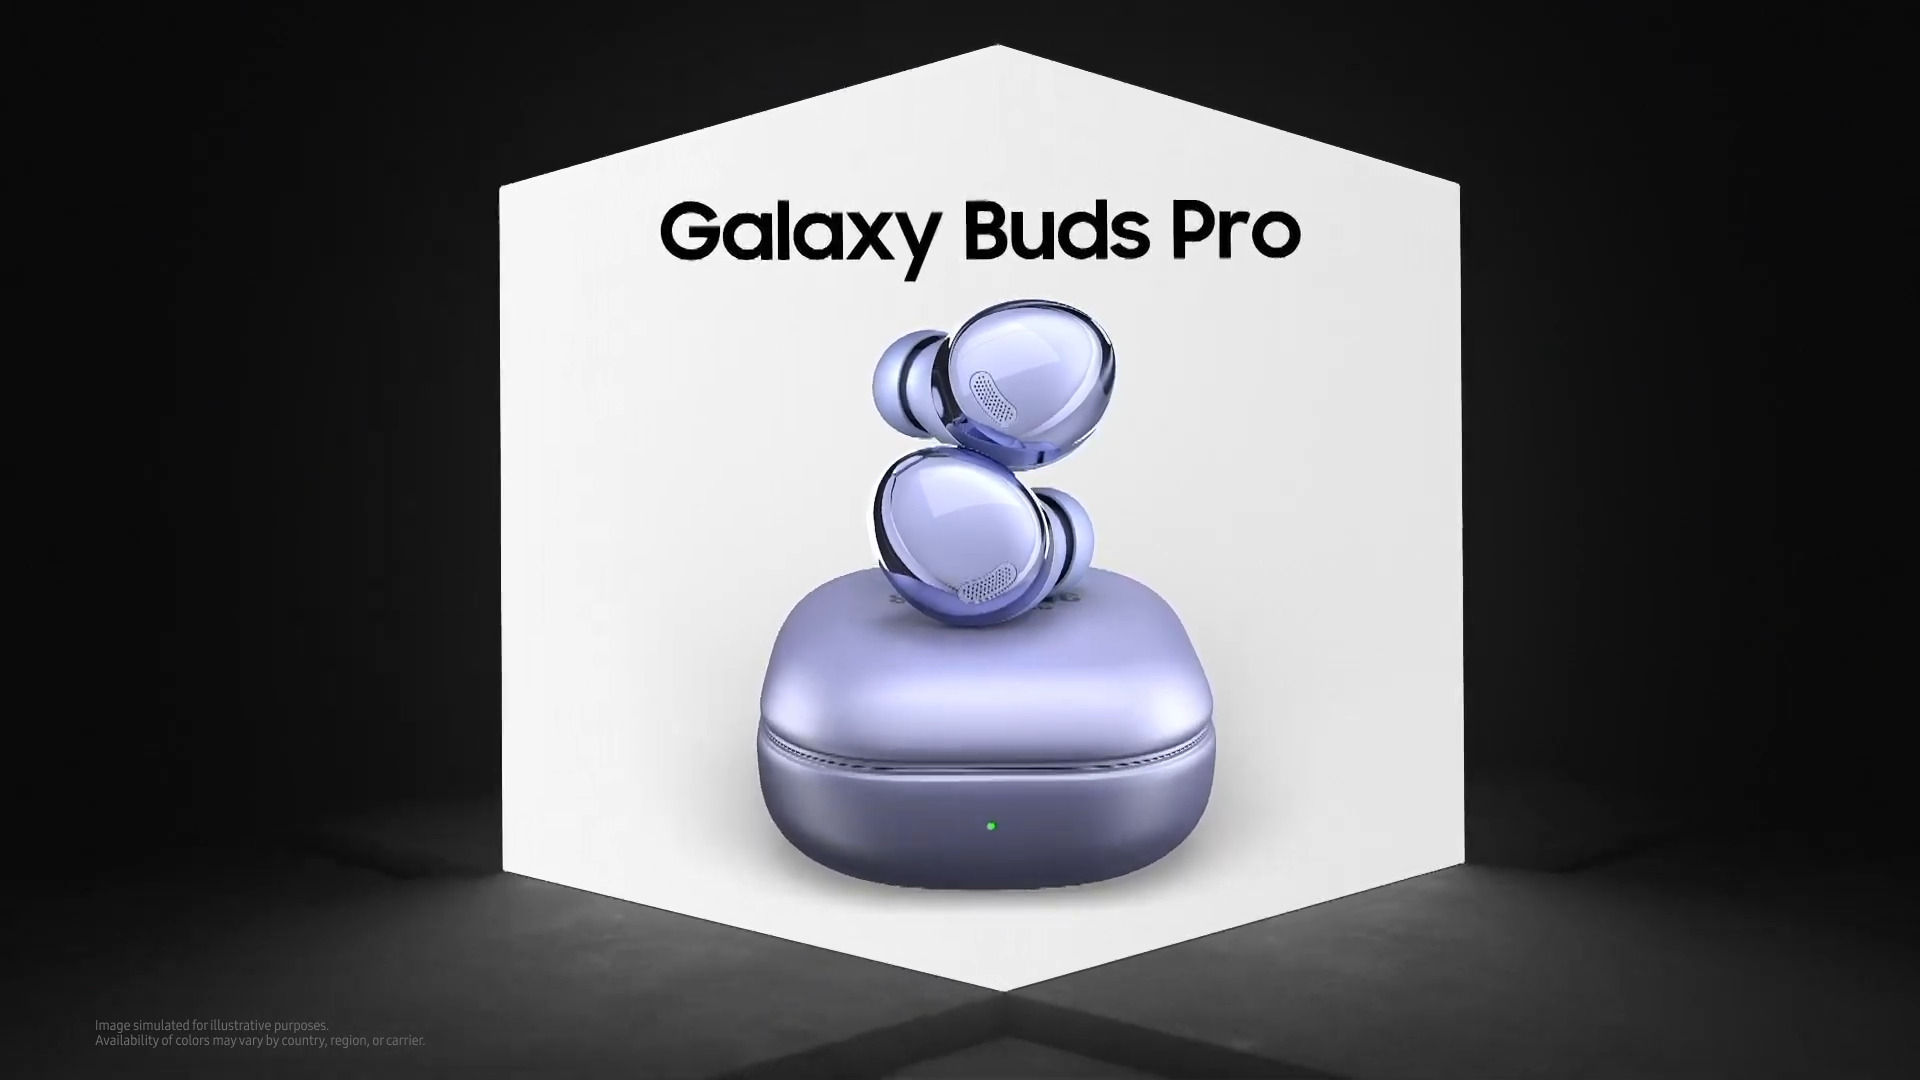 Samsung Galaxy S21, S21+, S21 Ultra et Galaxy Buds Pro le résumé des  annonces du Galaxy Unpacked